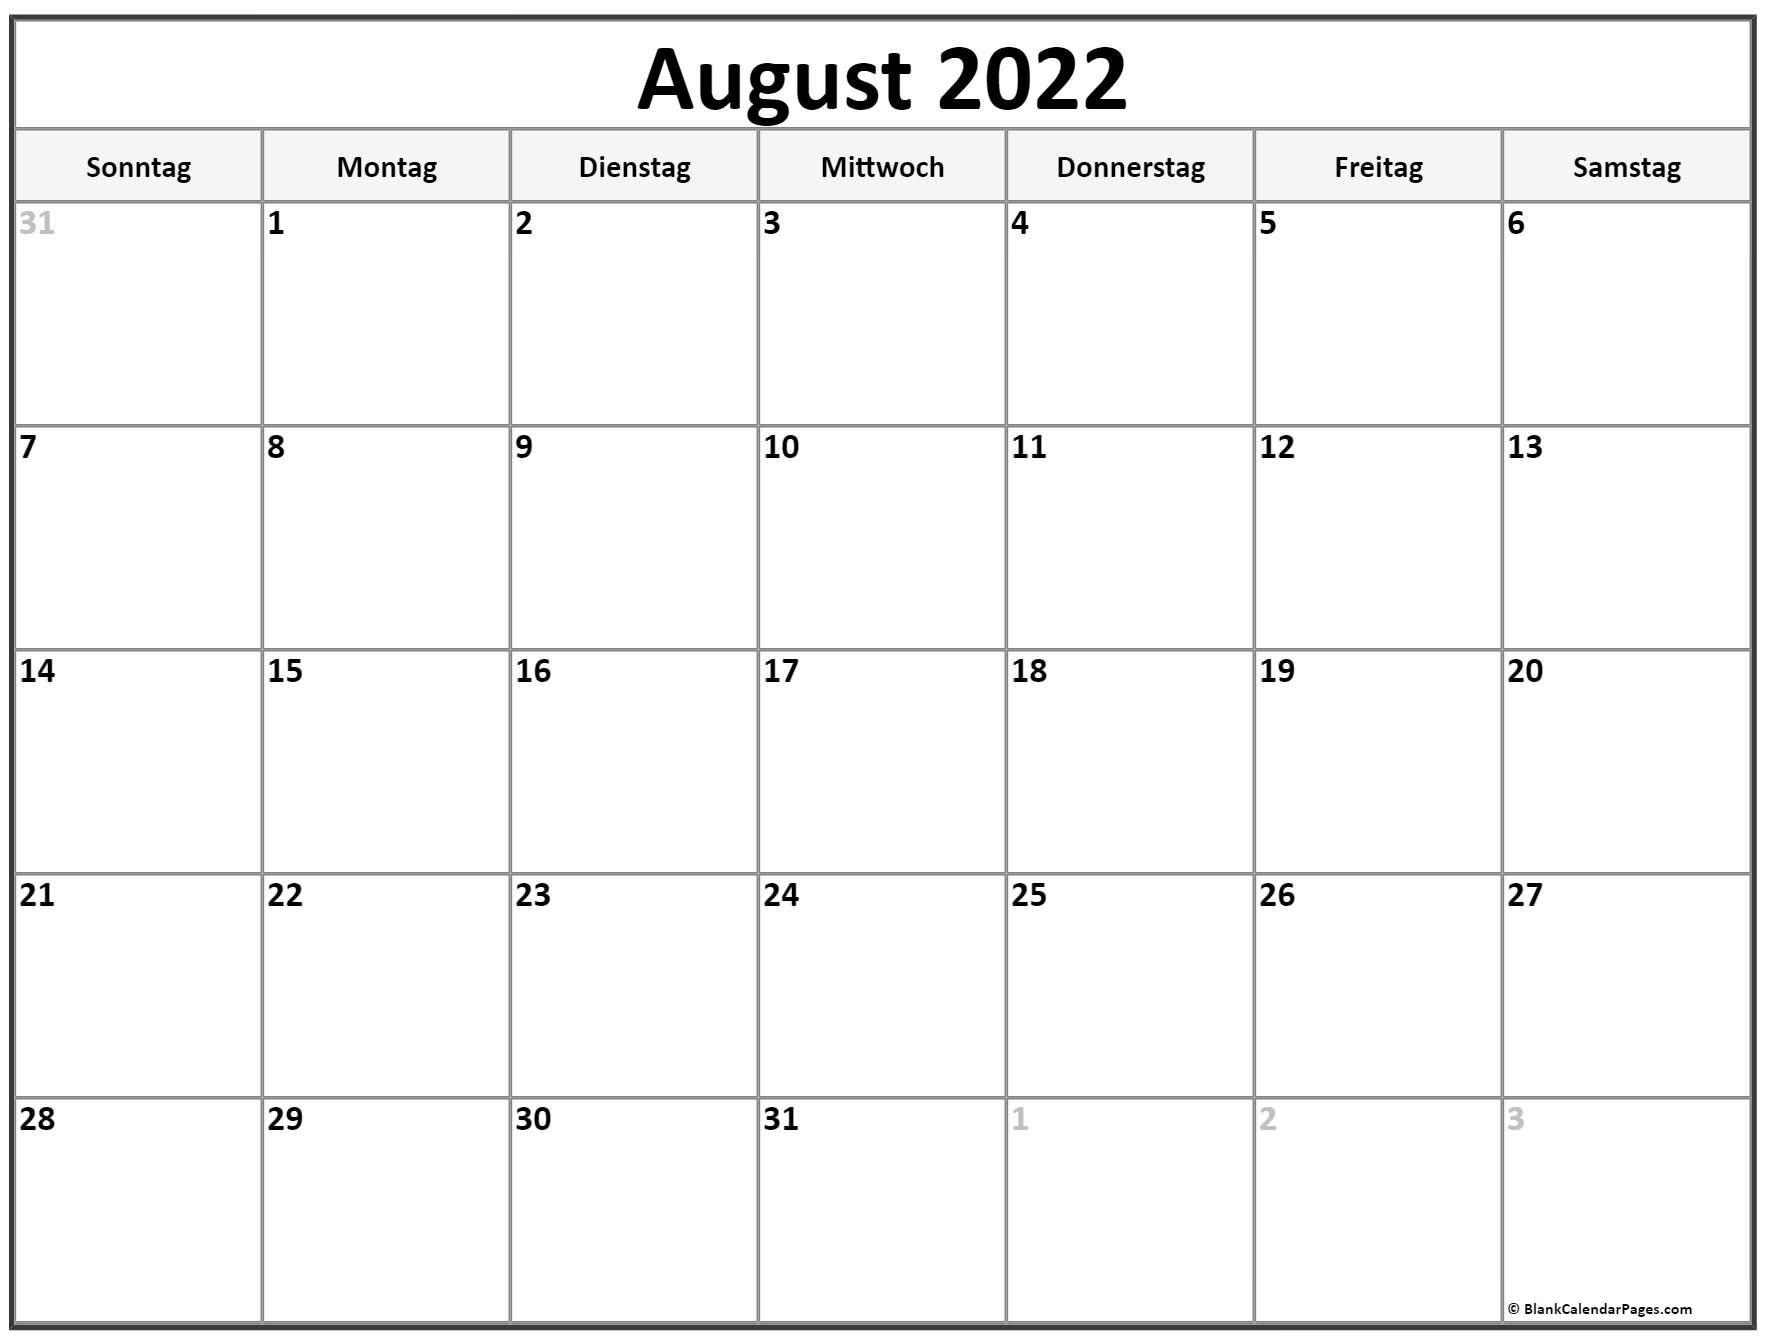 August 2022 Kalender | Kalender 2022